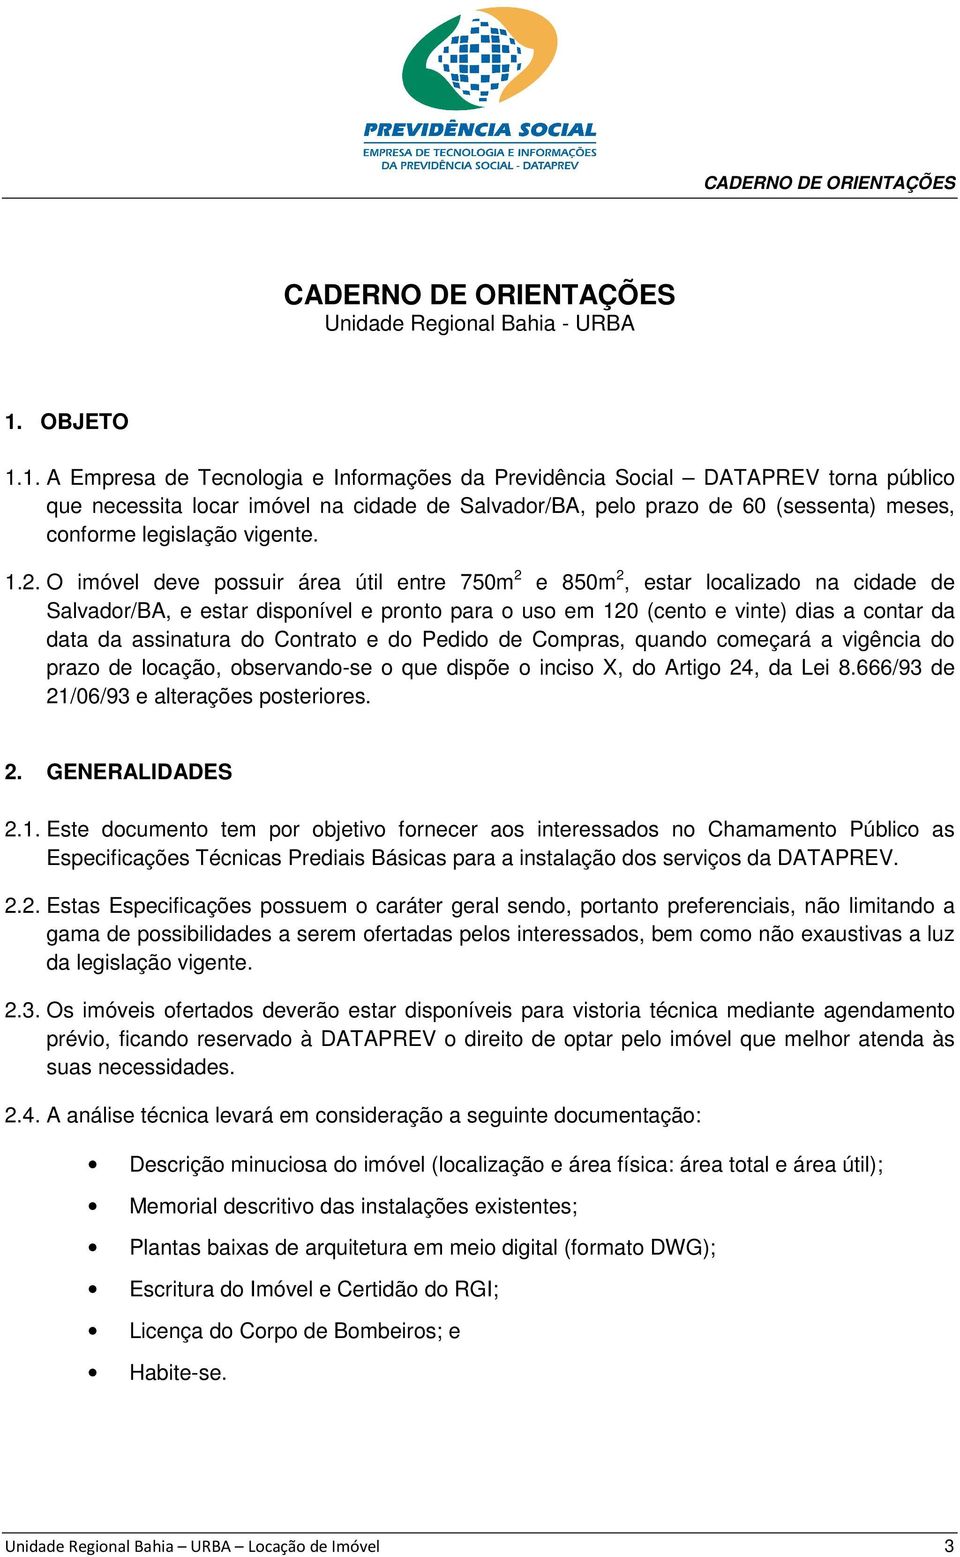 1. A Empresa de Tecnologia e Informações da Previdência Social DATAPREV torna público que necessita locar imóvel na cidade de Salvador/BA, pelo prazo de 60 (sessenta) meses, conforme legislação